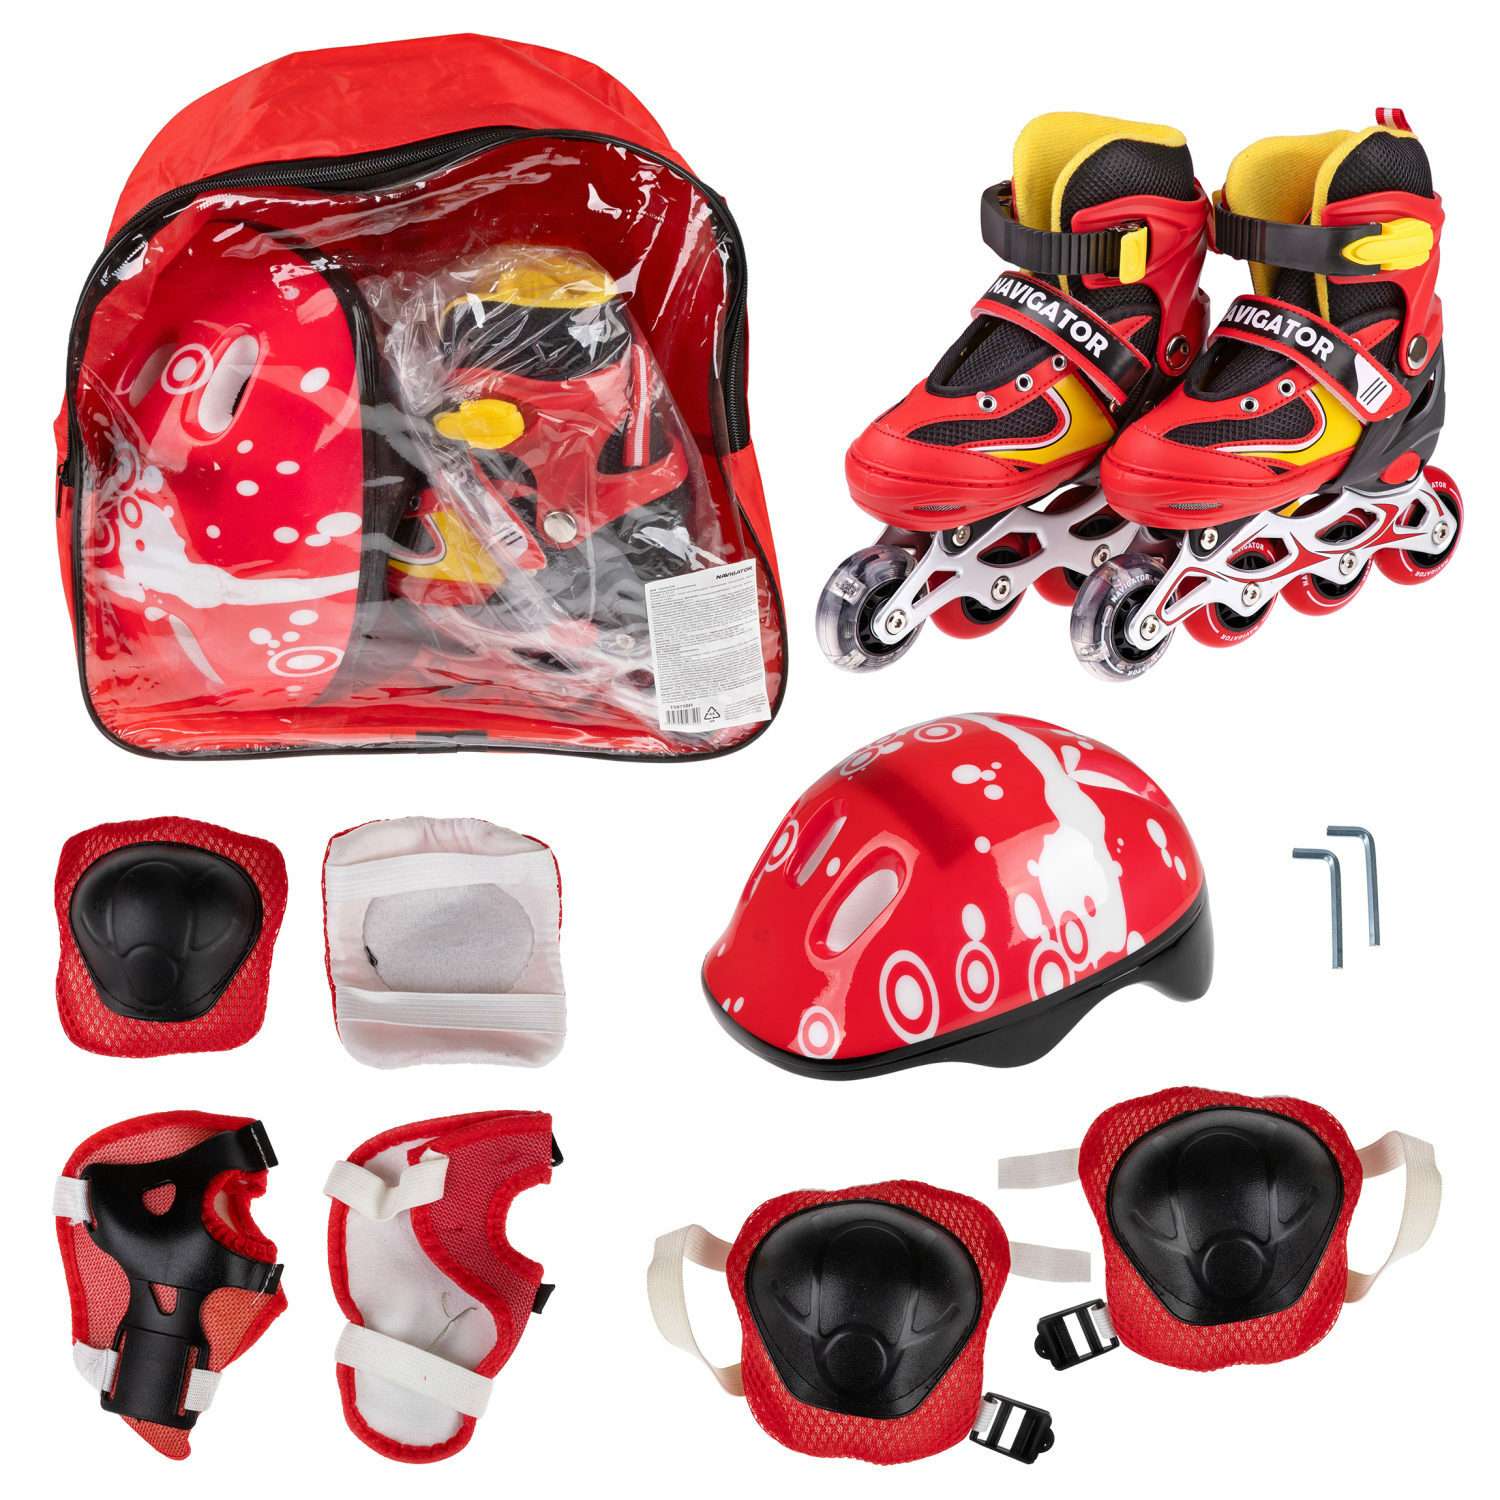 Ролики Navigator детские раздвижные 34 - 37 размер с защитой и шлемом красный - фото 2